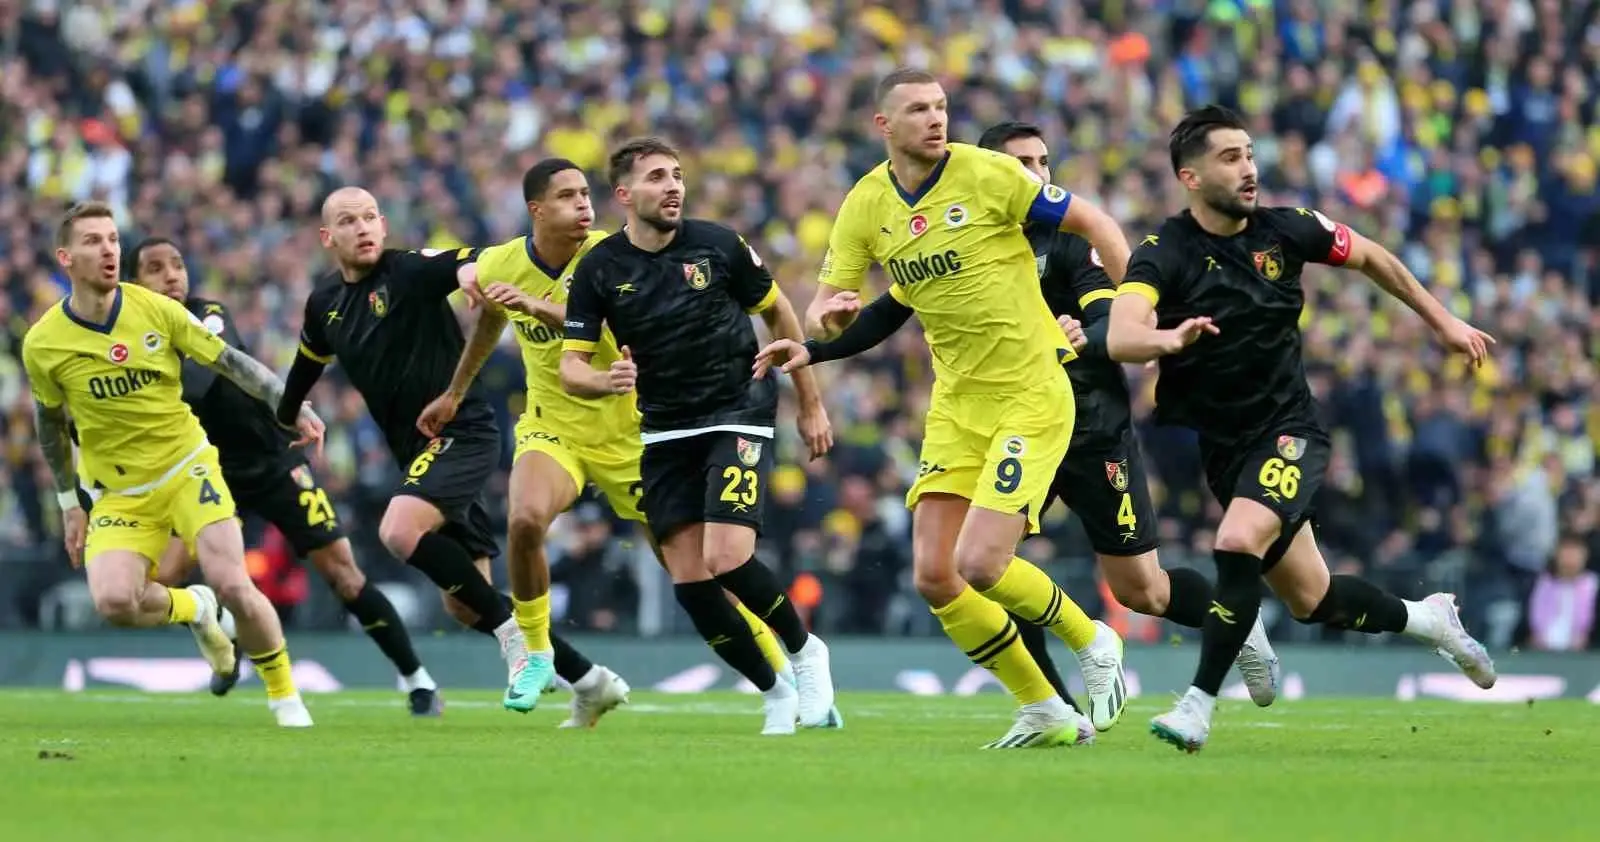 Fenerbahçe – İstanbulspor Karşılaşmasında Mert Hakan Yandaş, Jayden Oosterwolde Dahil 10 Oyuncu Forma giyemeyecek